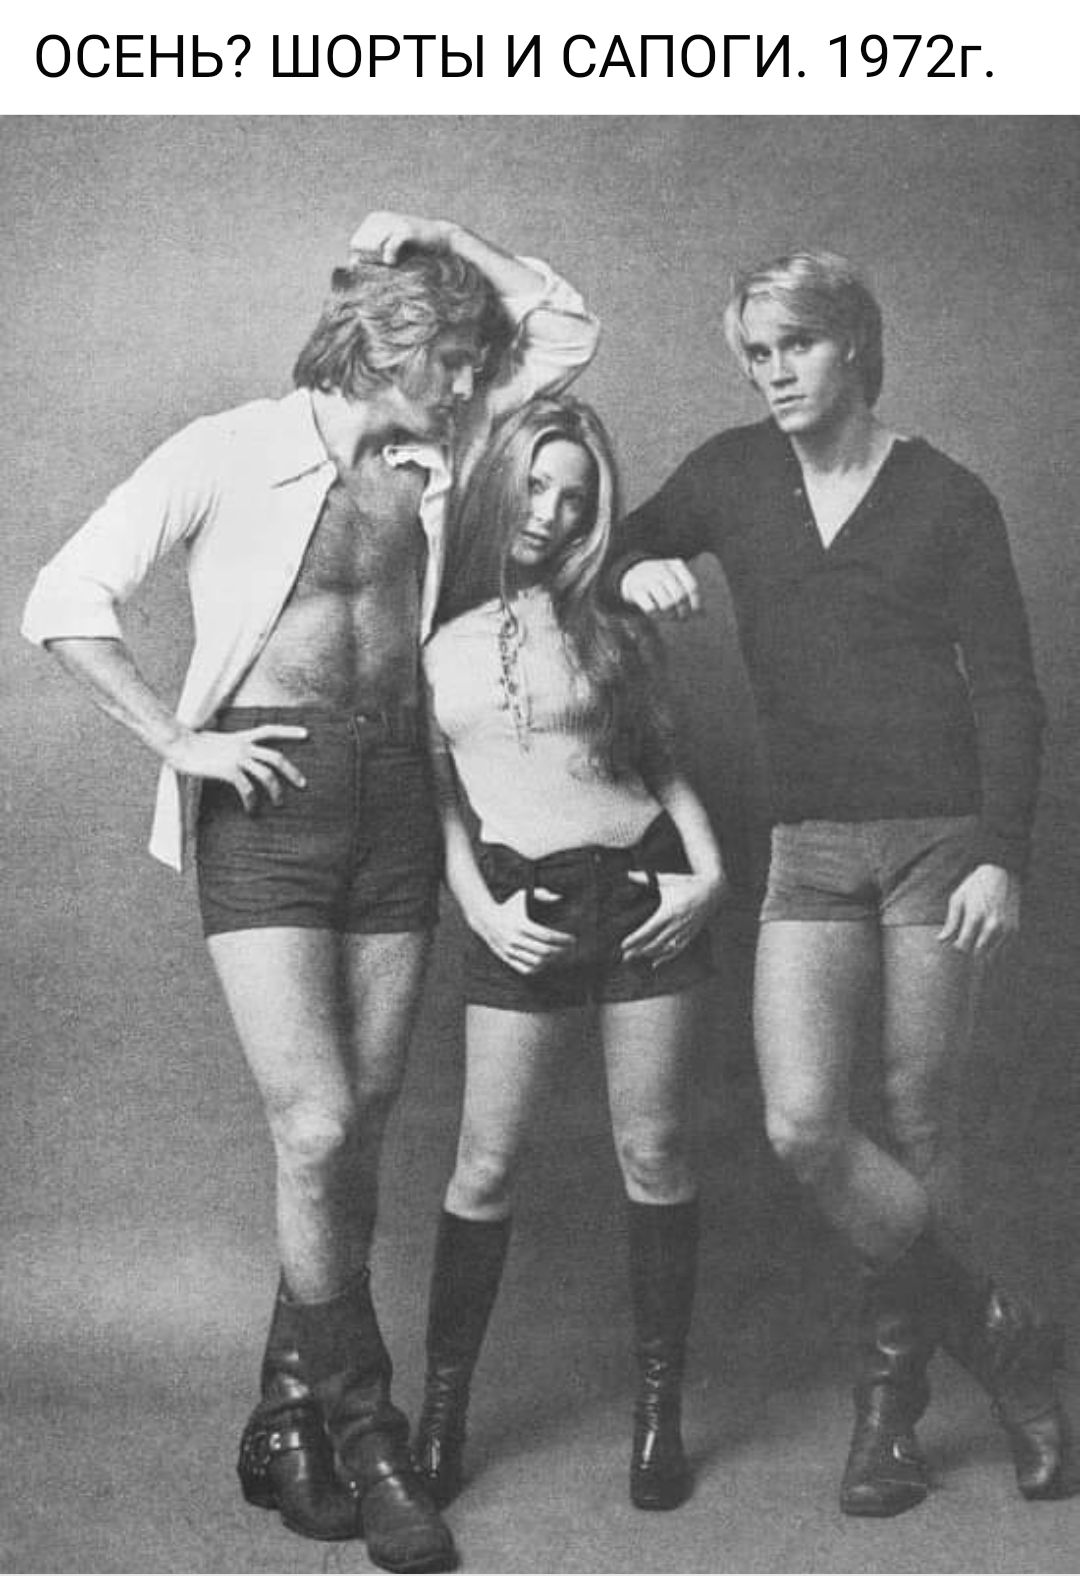 Сапоги-чулки 70-х годов